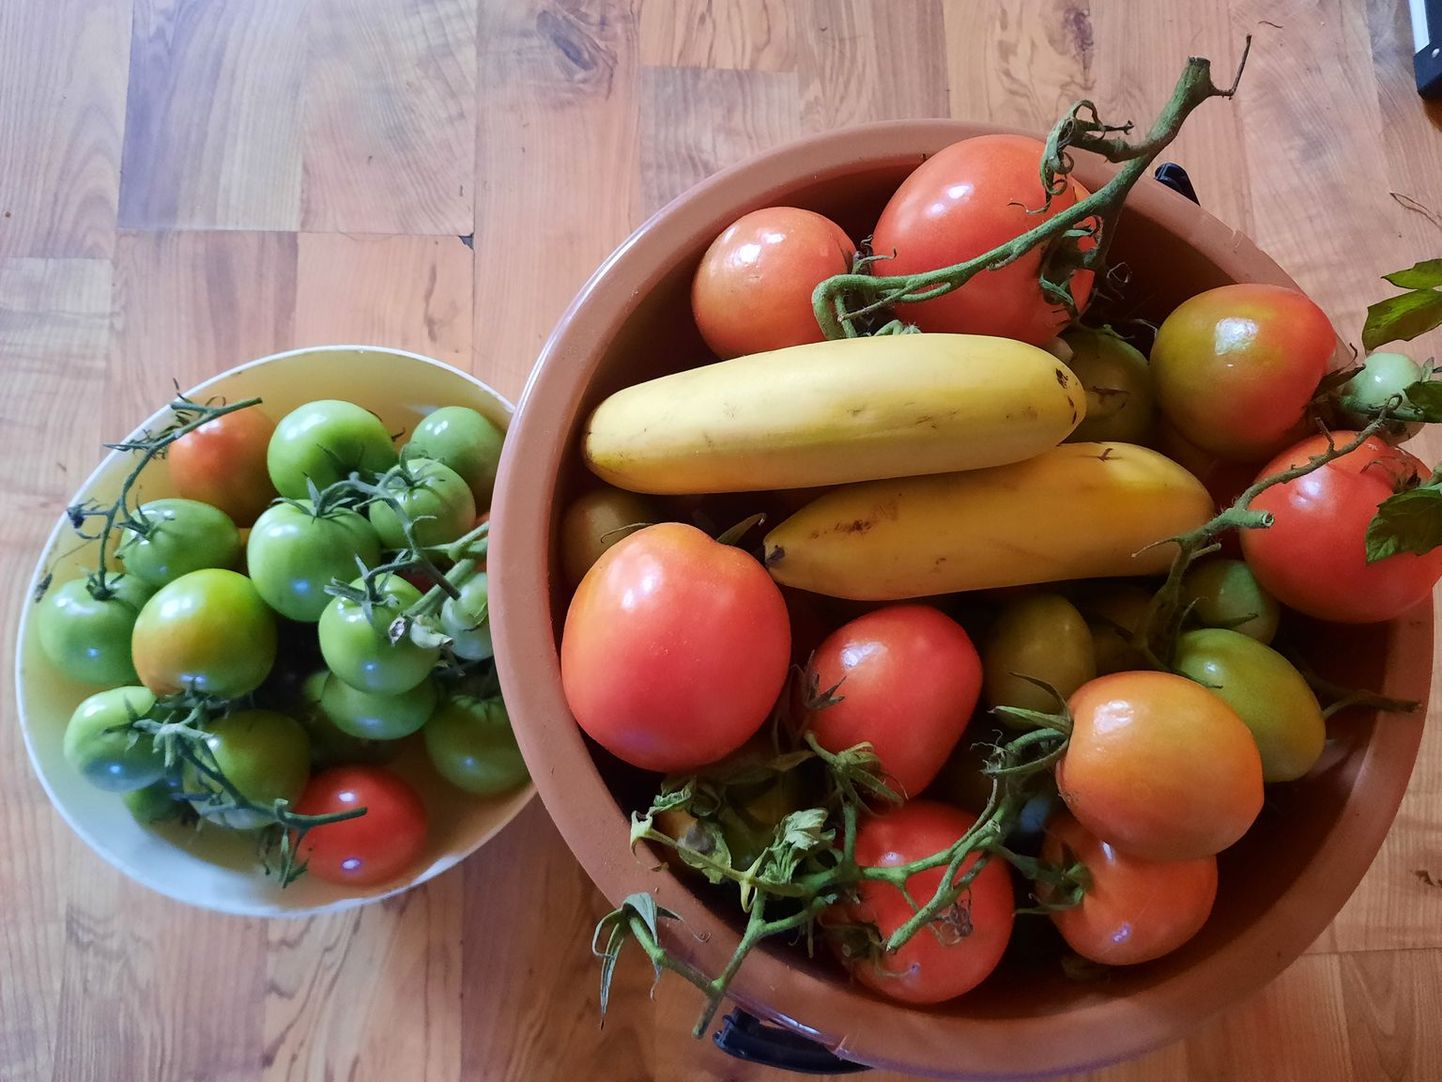 Rohelised tomatid on korjatud samal päeval, kuid selles anumas, mille peal banaanikobar, värvuvad viljad palju kiiremini.